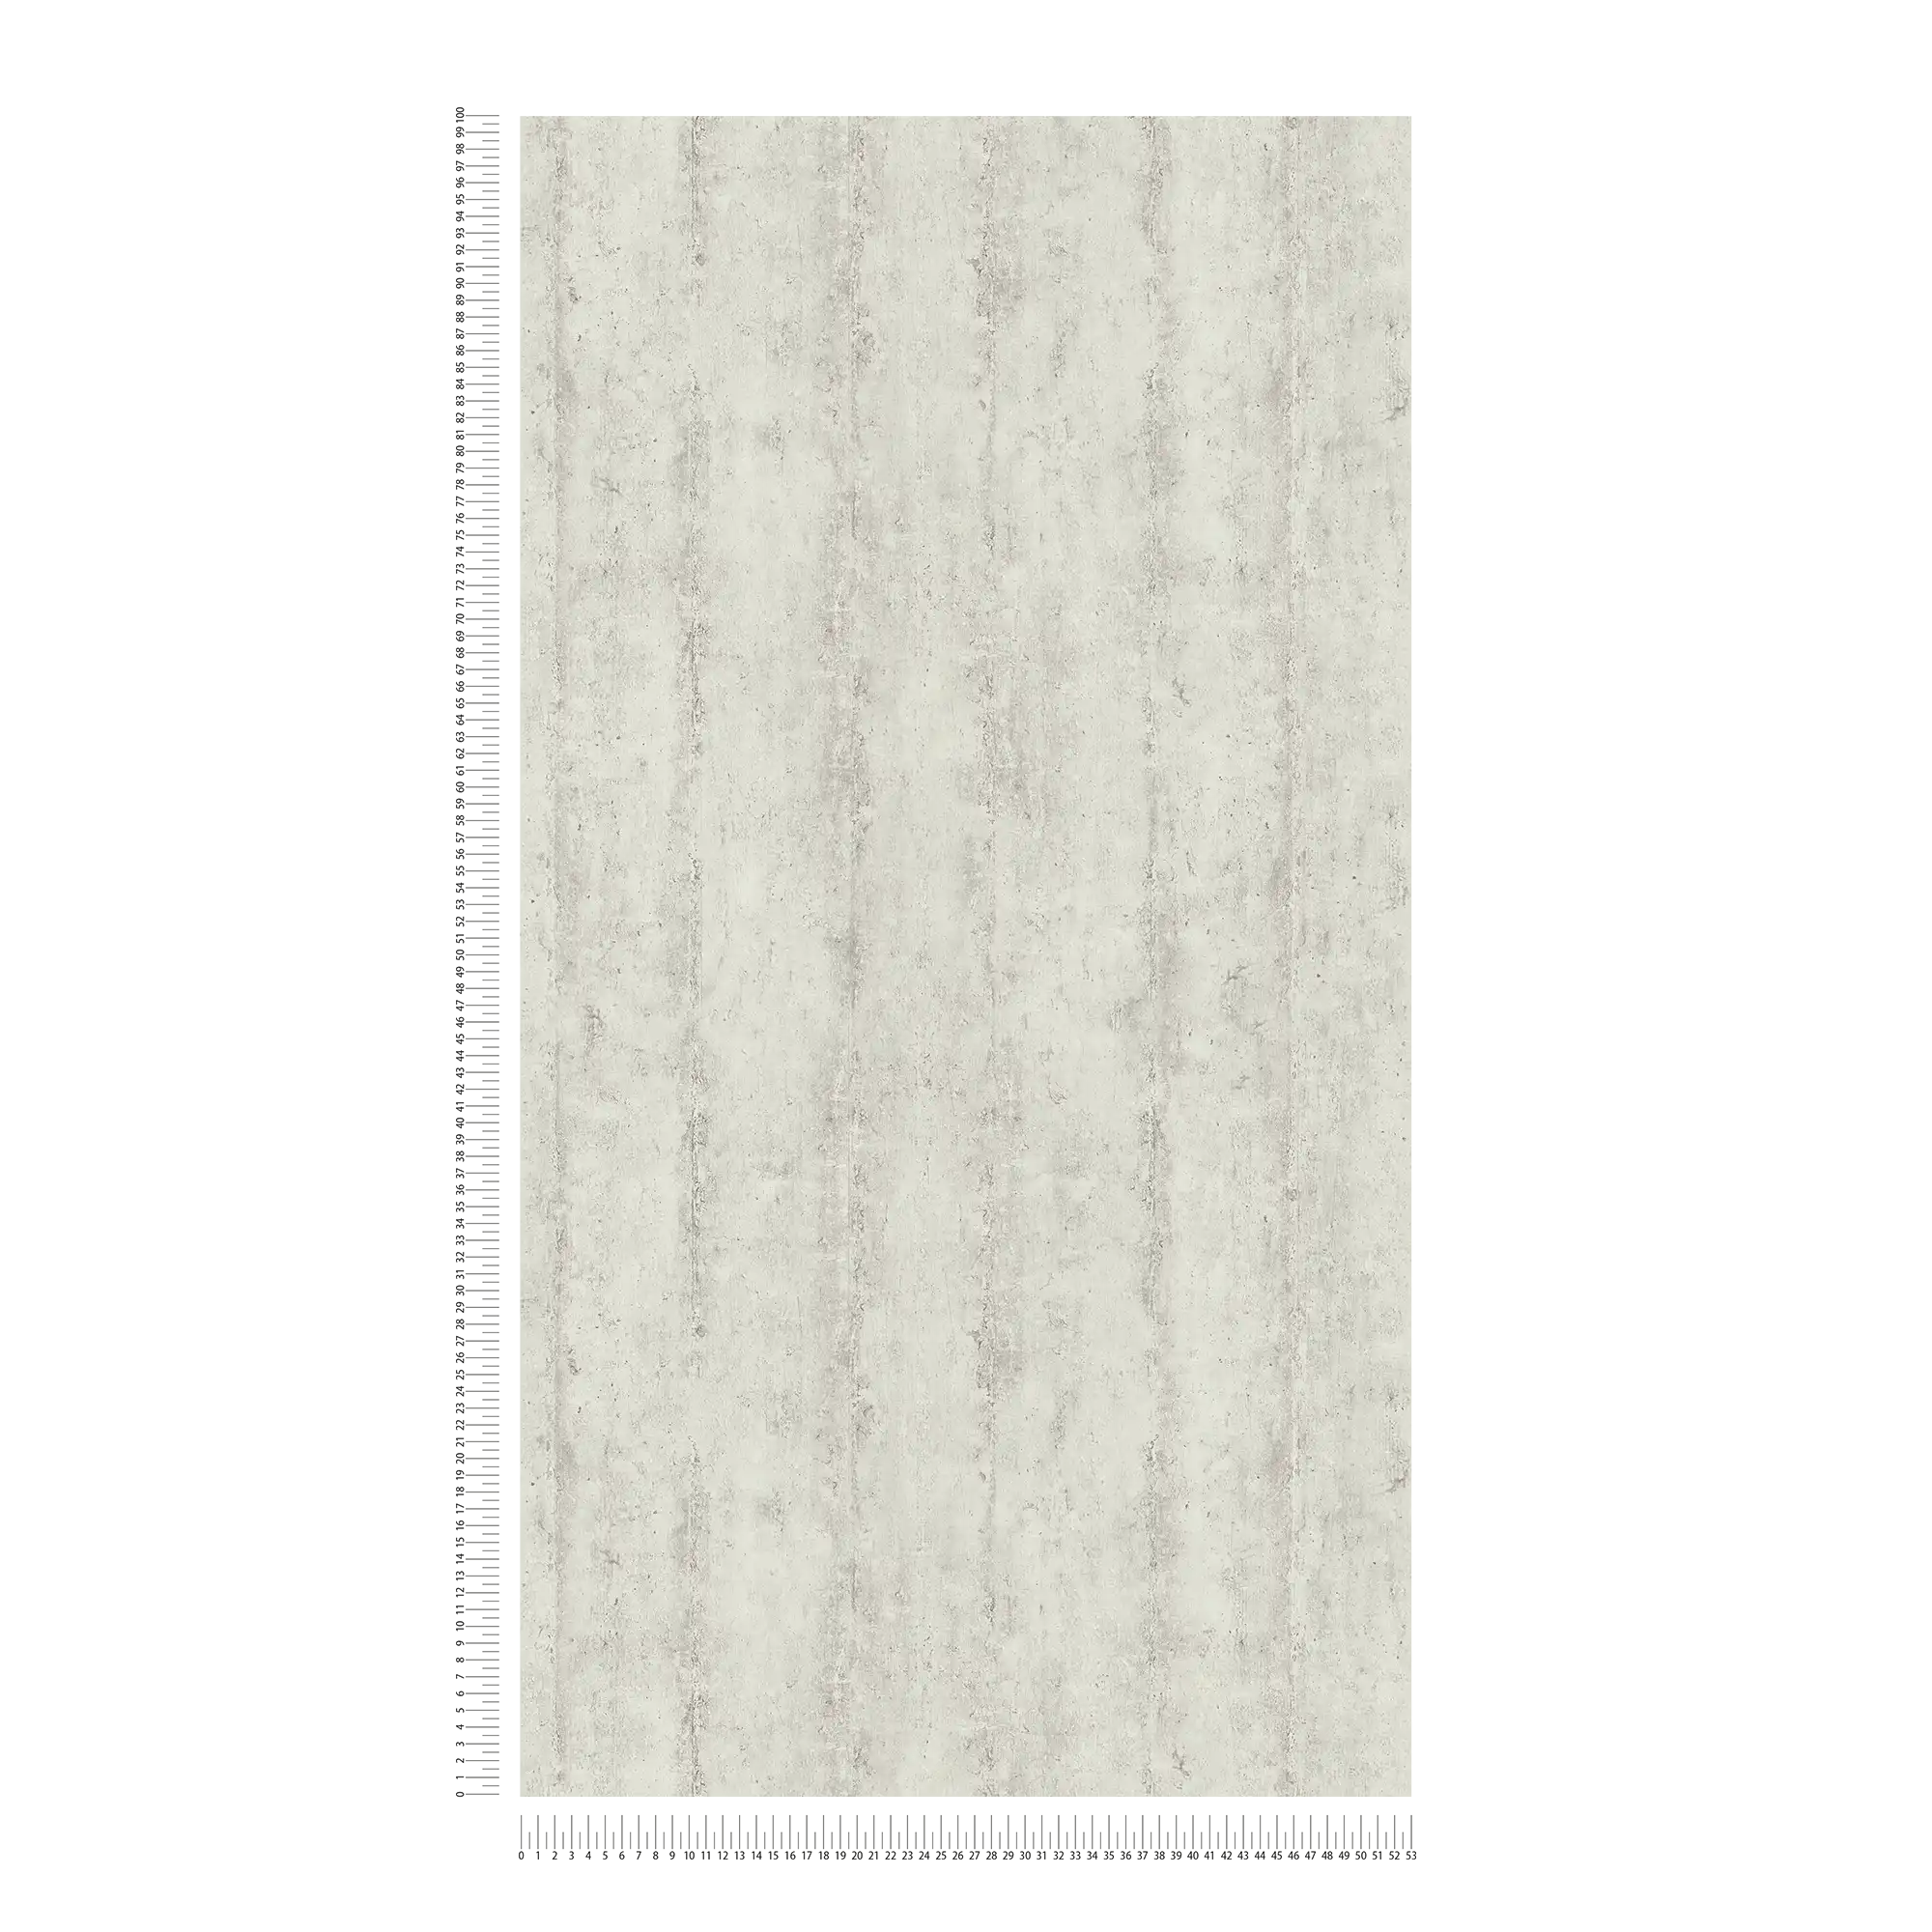             Papel pintado de tejido-no-tejido con diseño de rayas en aspecto de hormigón - beige, gris
        